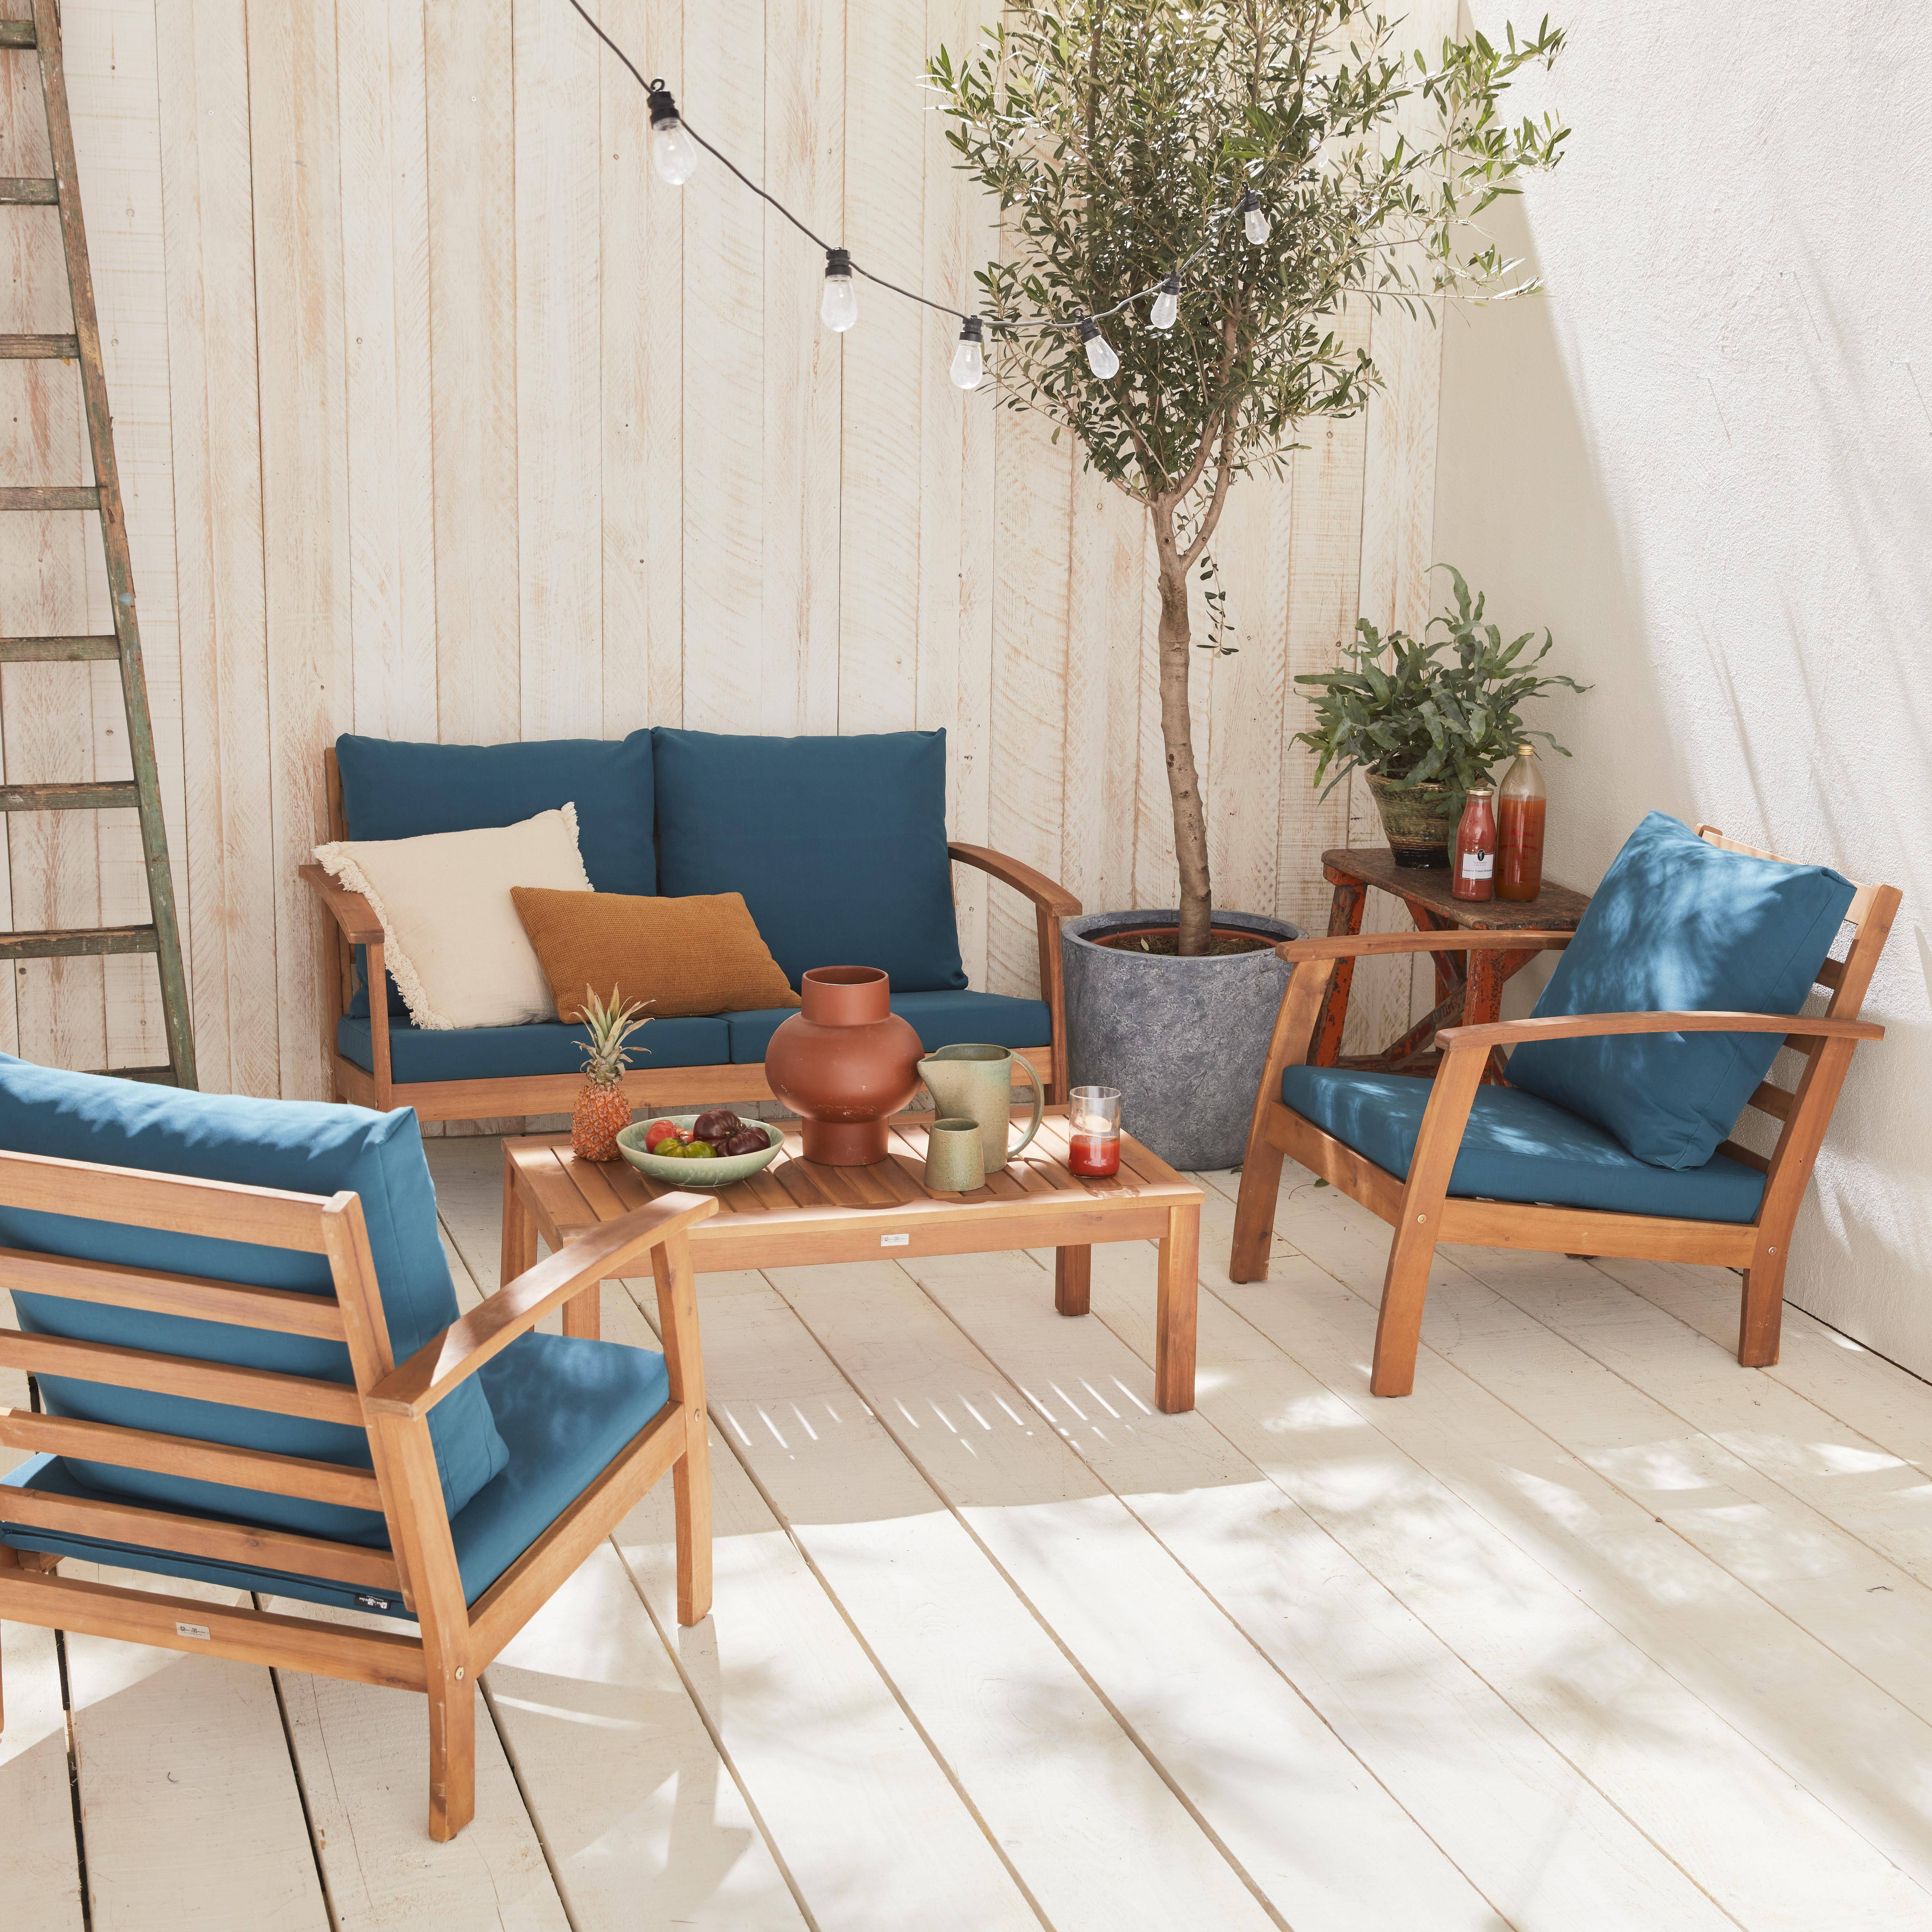 Móveis de madeira para jardim 4 lugares - Almofadas, sofás, poltronas e mesa de café em acácia, design - Ushuaïa Photo1